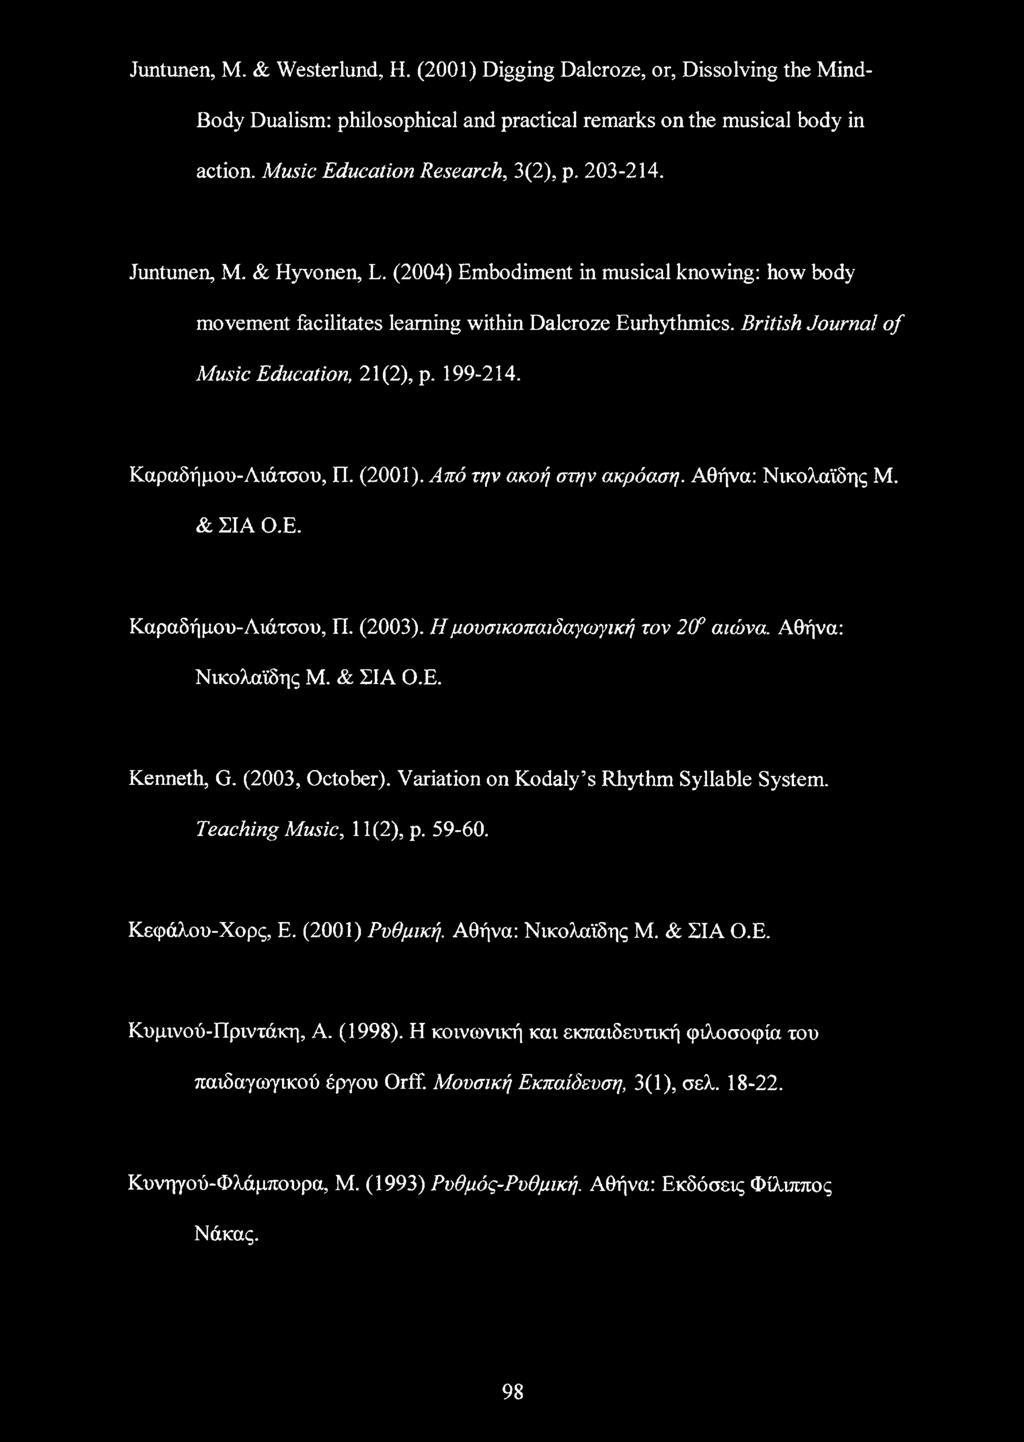 Καραδήμου-Λιάτσου, Π. (2001). Από την ακοή στην ακρόαση. Αθήνα: Νικολαϊδης Μ. & ΣΙΑ Ο.Ε. Καραδήμου-Λιάτσου, Π. (2003). Η μουσικοπαιδαγωγική τον 2(f αιώνα. Αθήνα: Νικολαϊδης Μ. & ΣΙΑ Ο.Ε. Kenneth, G.